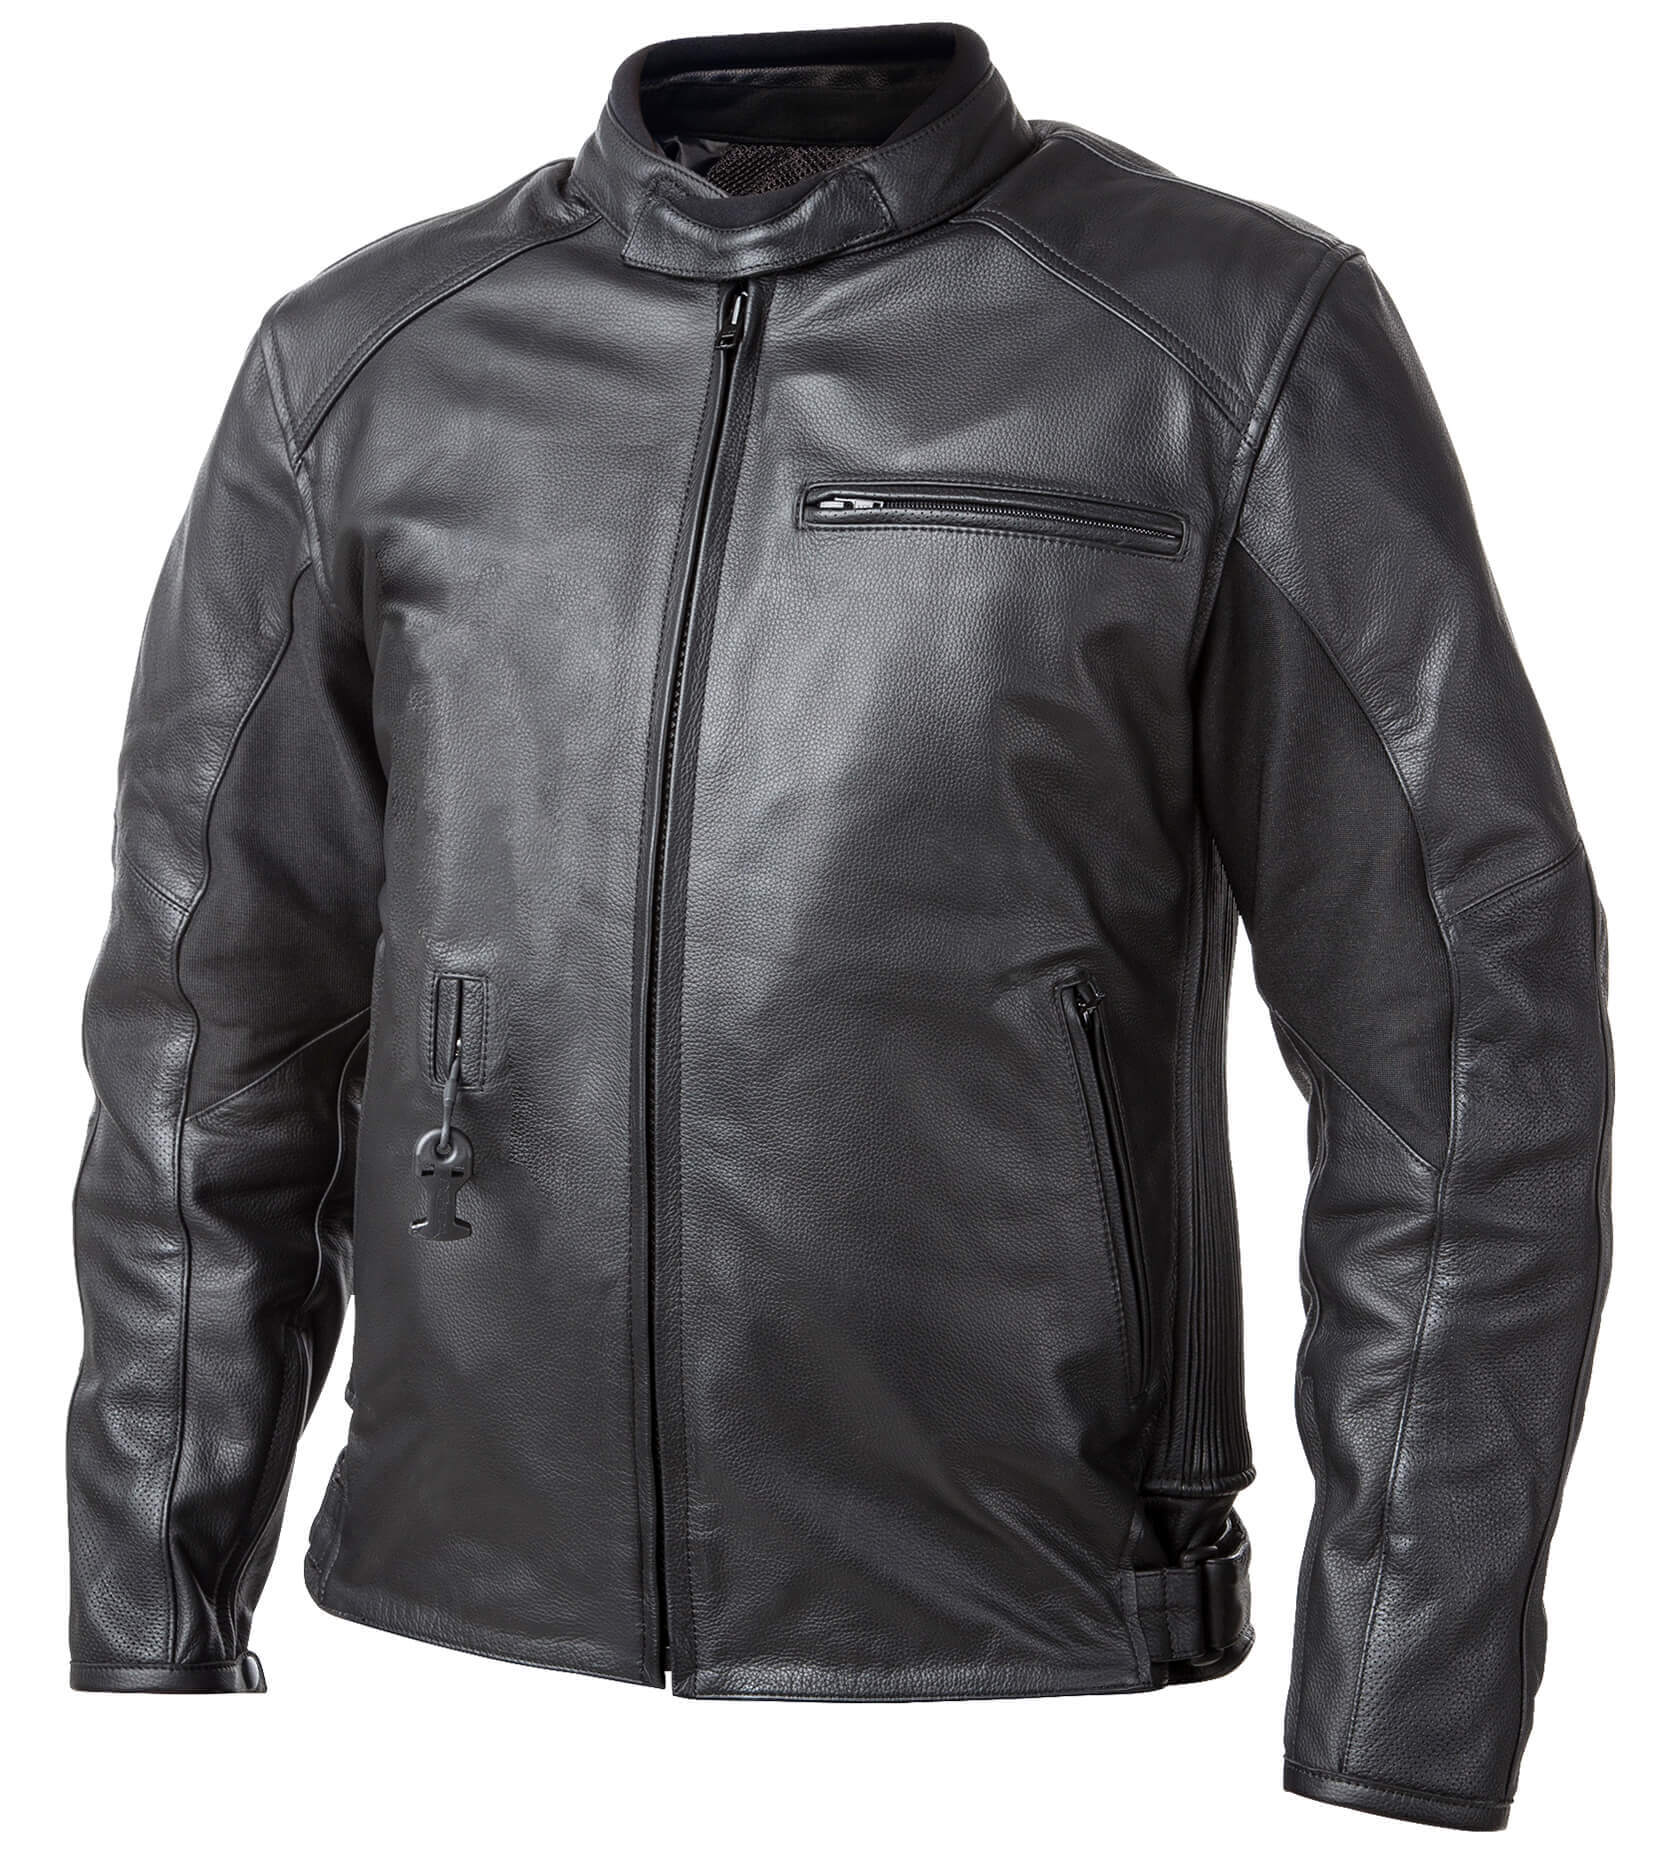 Airbag kabát Helite Roadster Vintage fekete bőr  Fekete  XXL